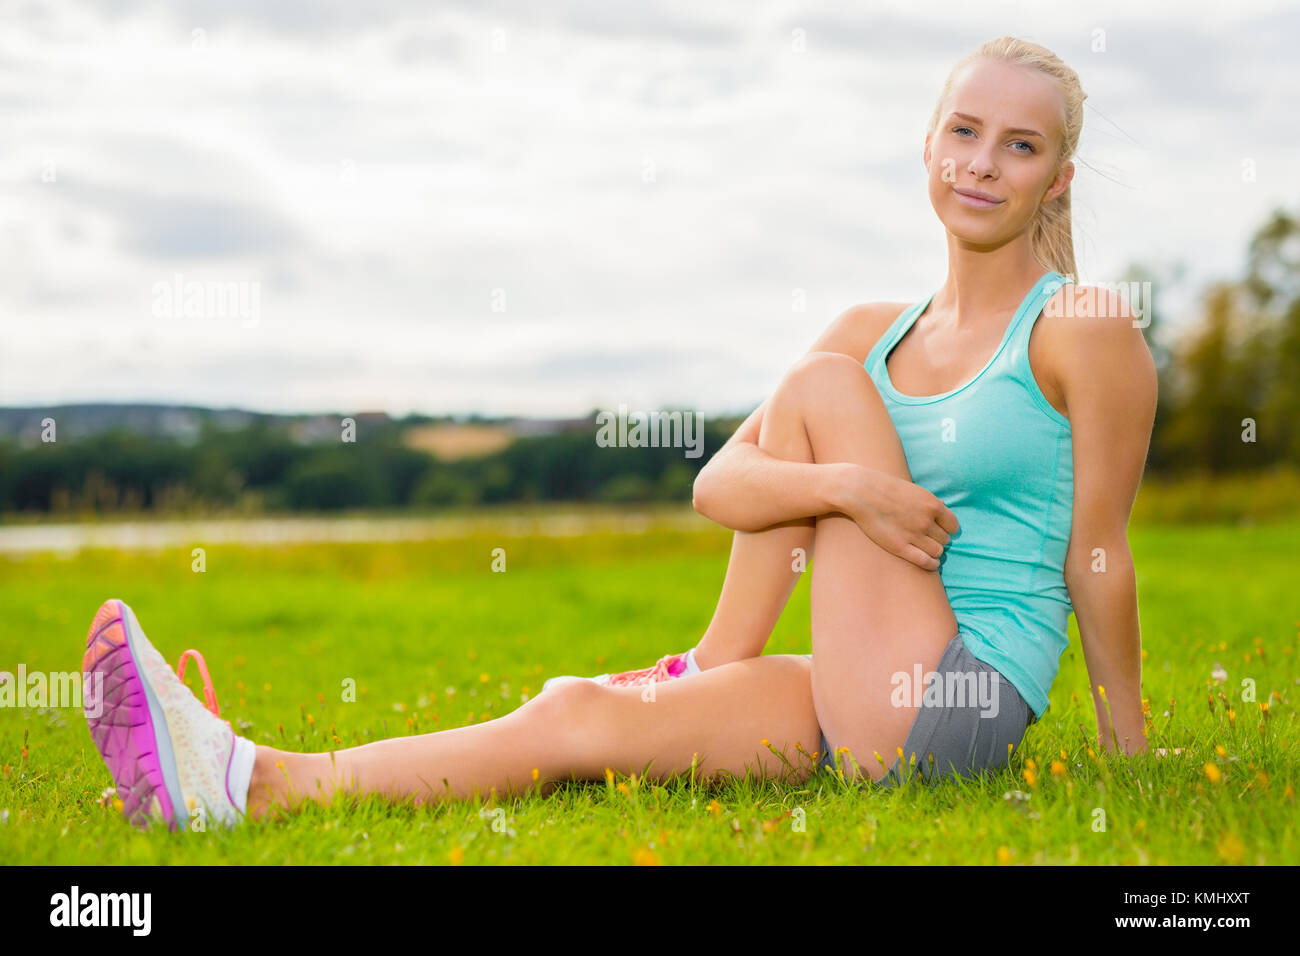 Femme blonde fit s'étendant sur l'herbe en plein air Banque D'Images